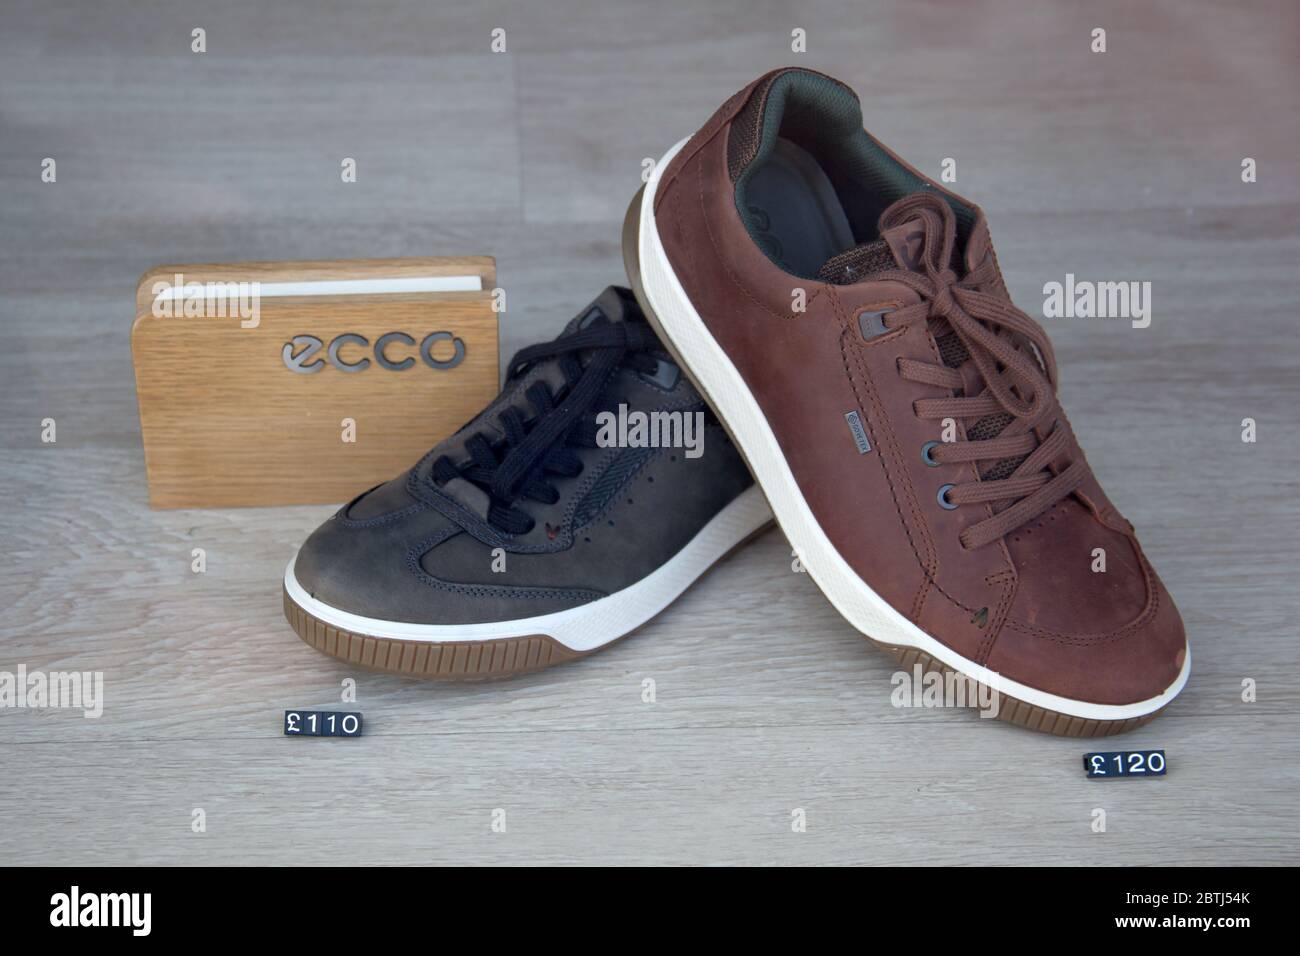 Ecco Schuhe im Verkauf in Großbritannien Stockfotografie - Alamy